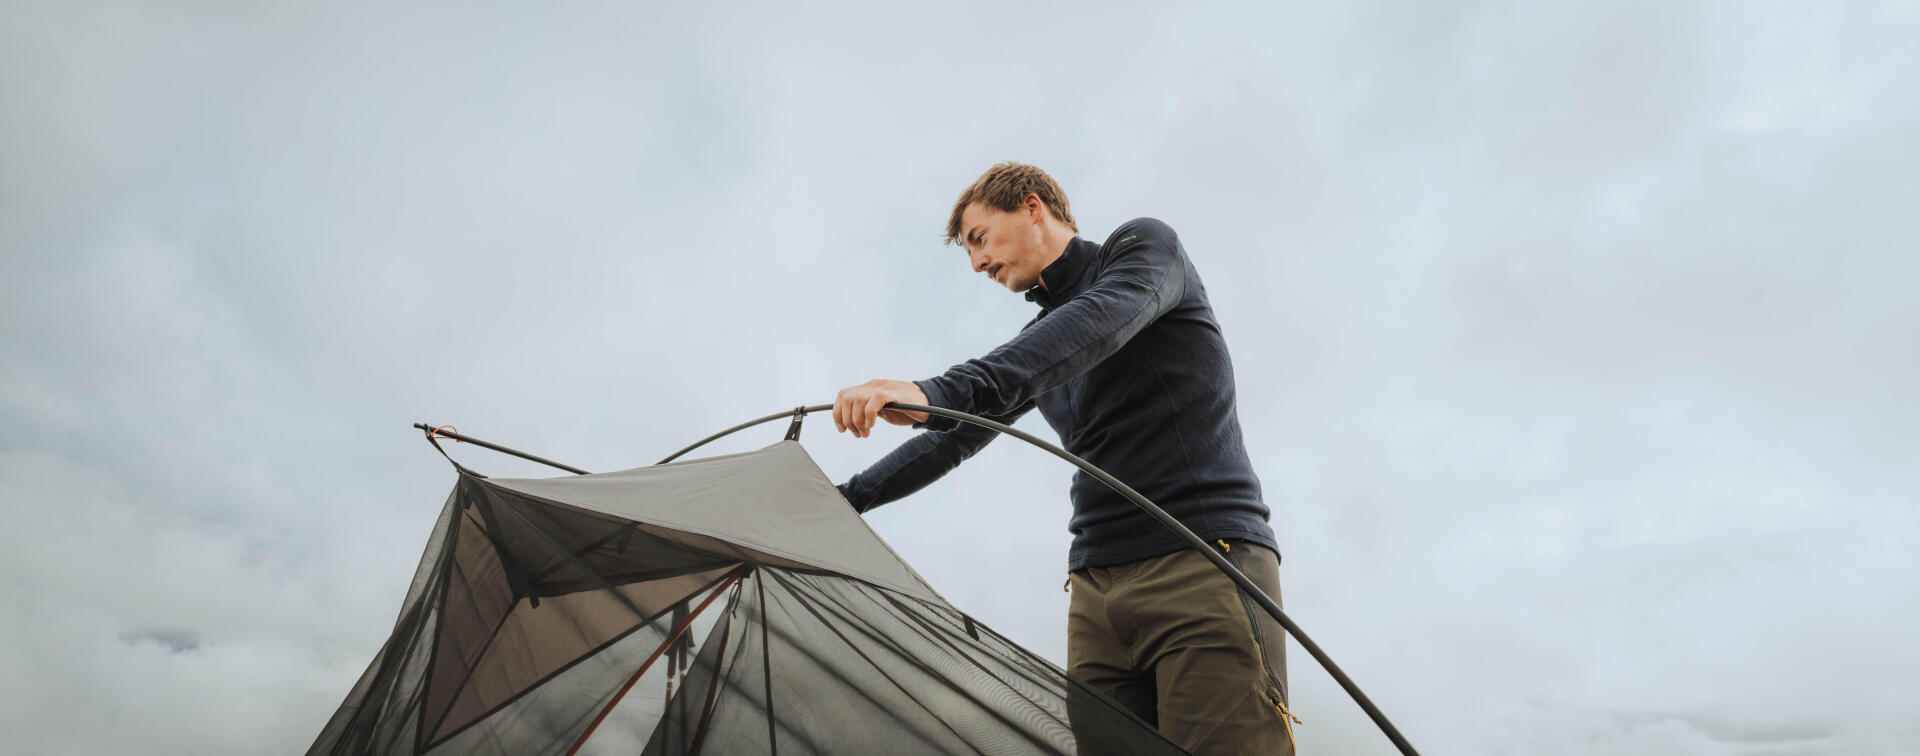 Comment réparer une tente déchirée ? 